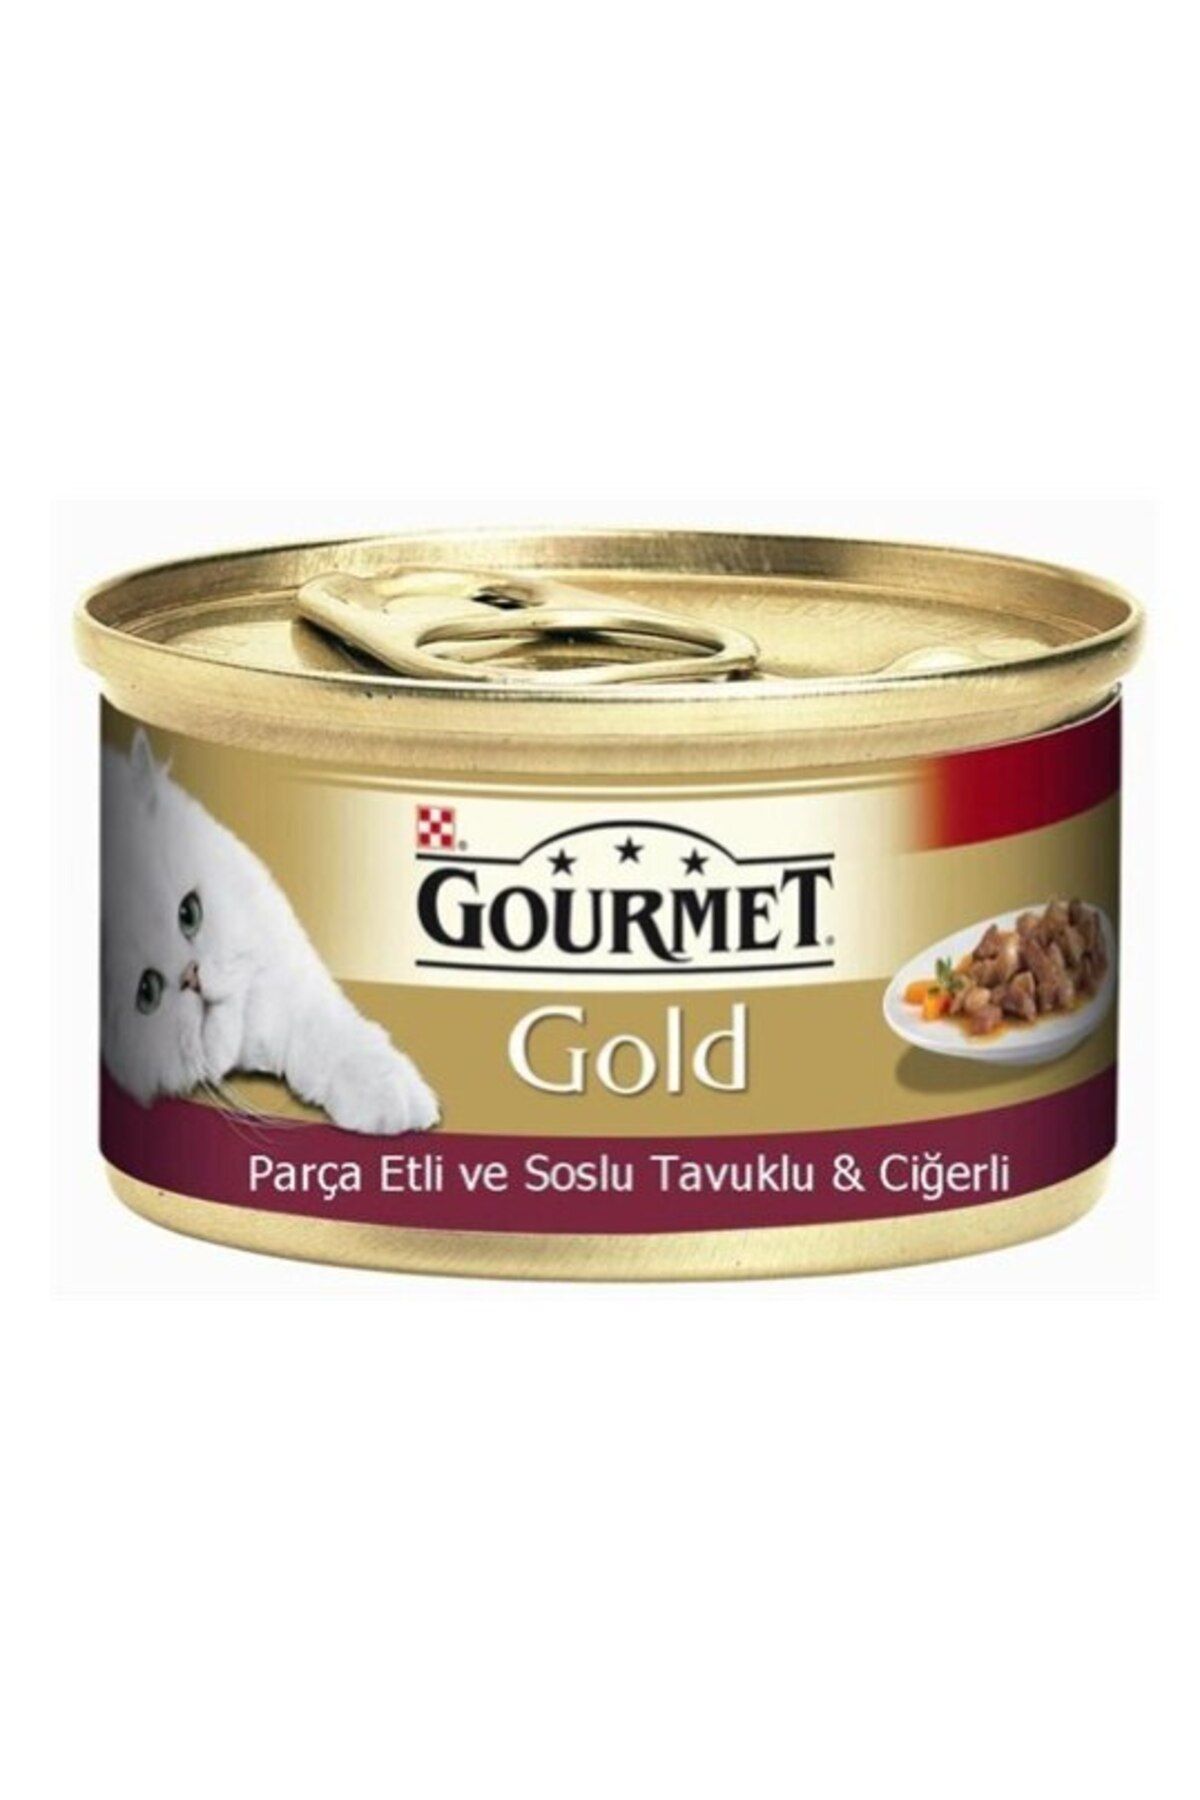 Gourmet Gold Parça Etli Tavuklu Ve Ciğerli Yetişkin Kedi Konserve Maması 24x85 gr